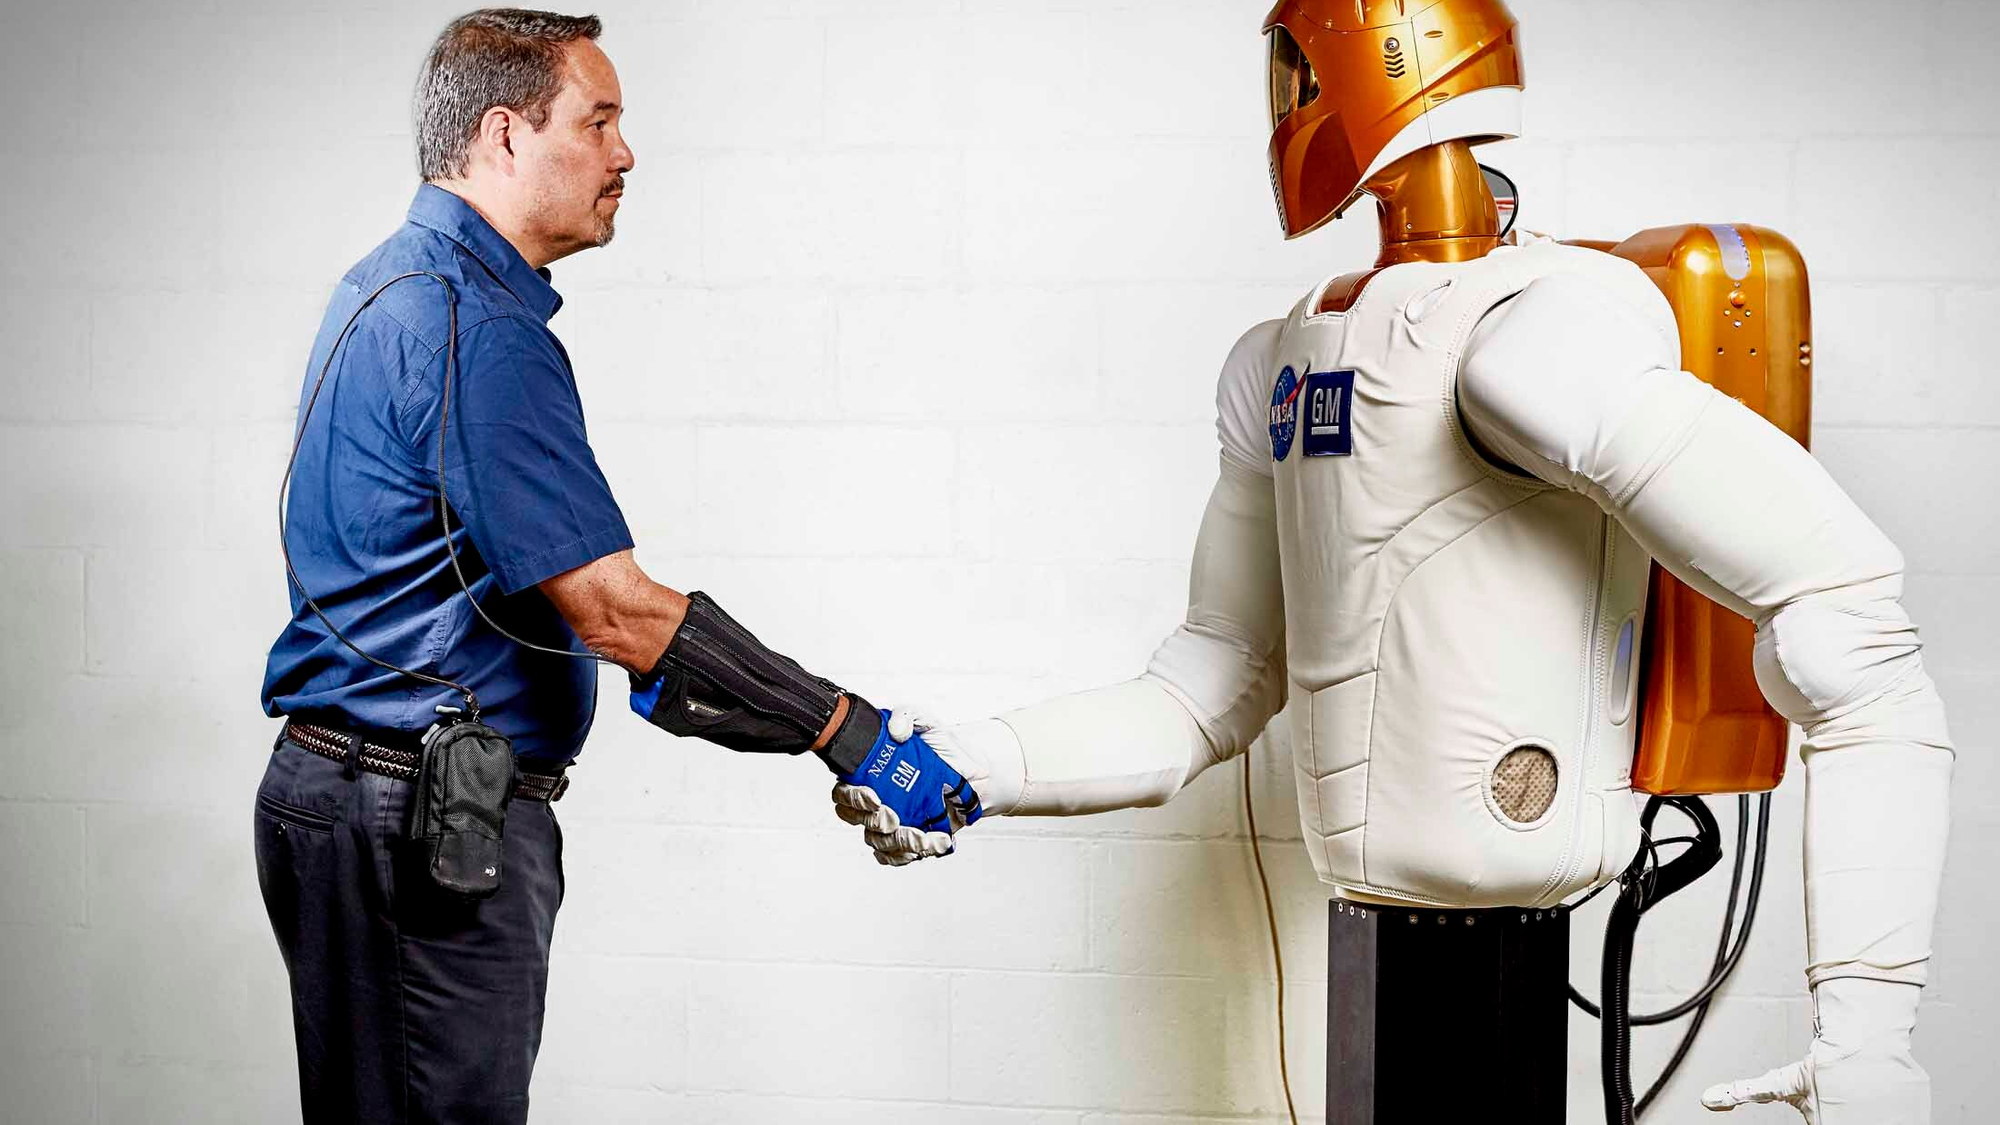 GM/NASA RoboGlove